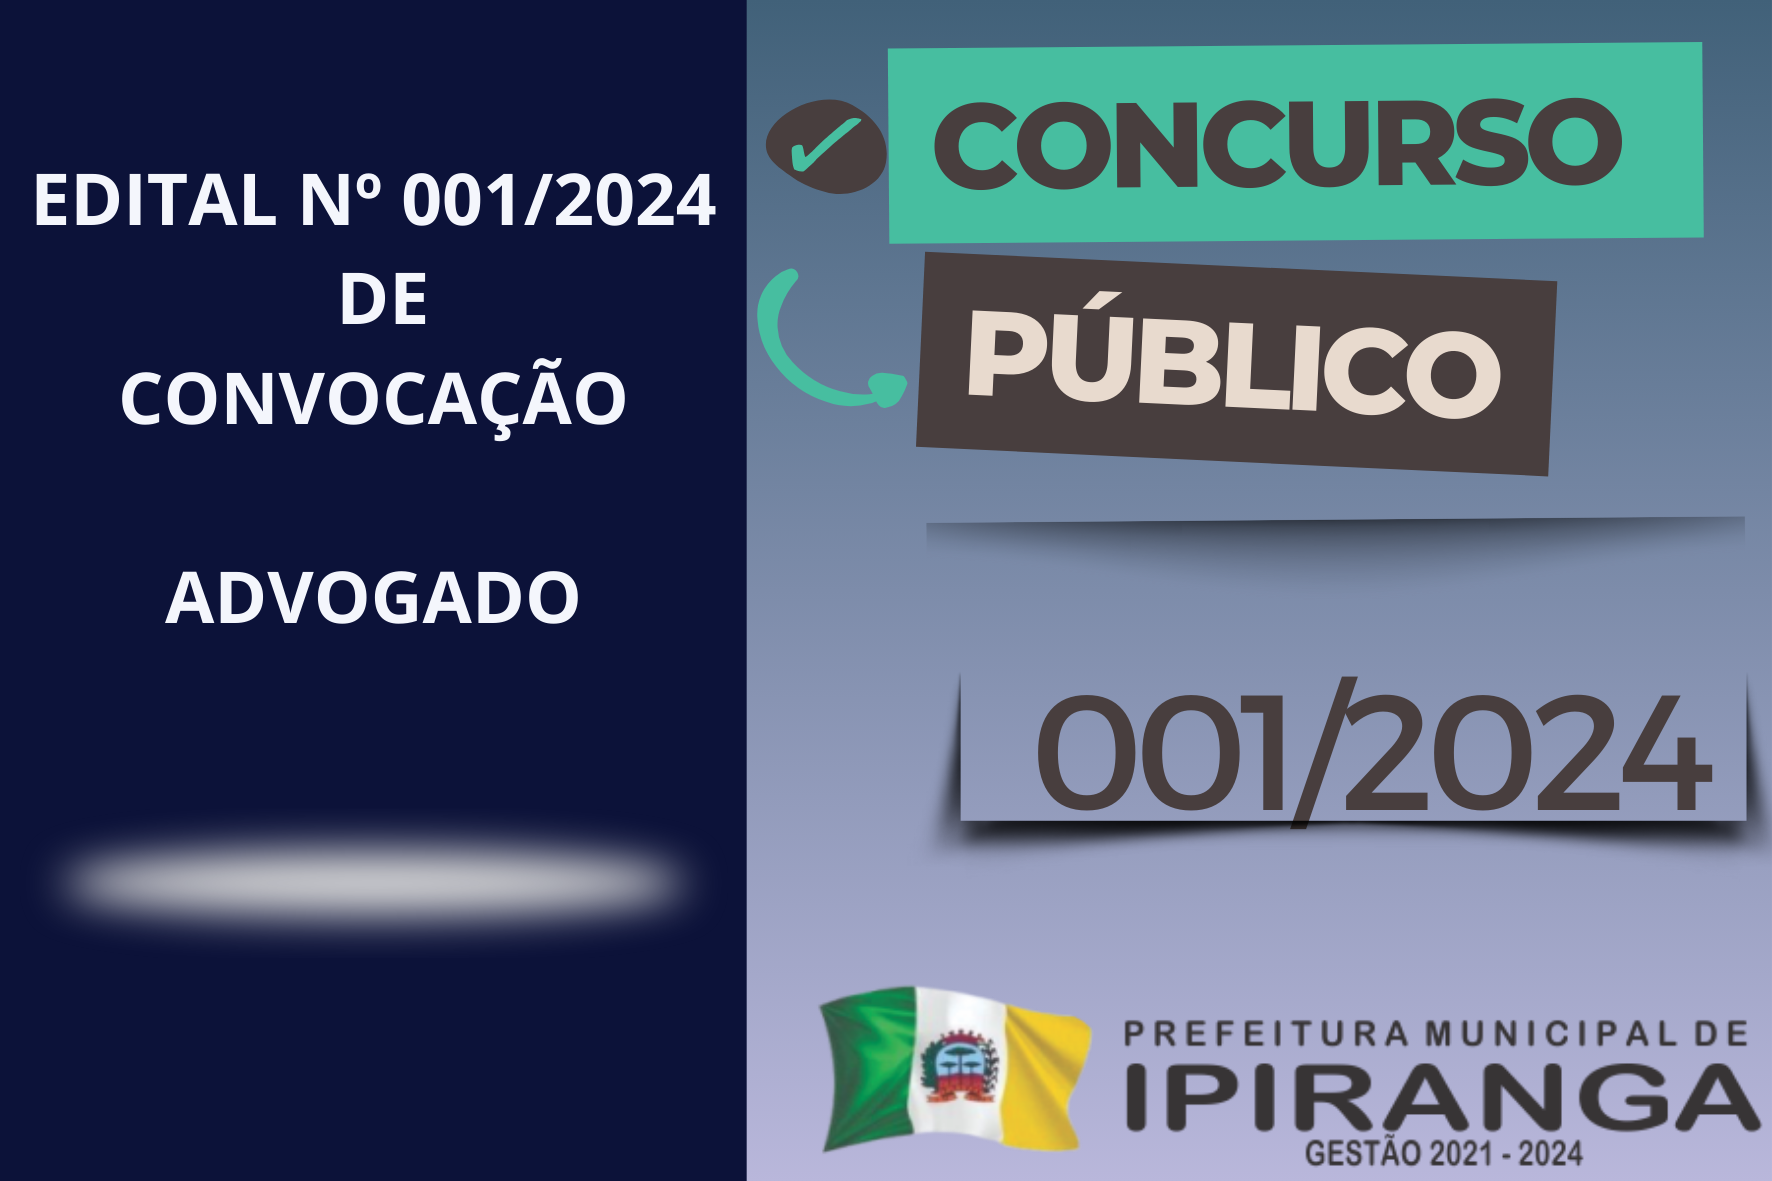 EDITAL DE CONVOCAÇÃO N.º 001/2024 – CONCURSO PÚBLICO N.º 001/2017